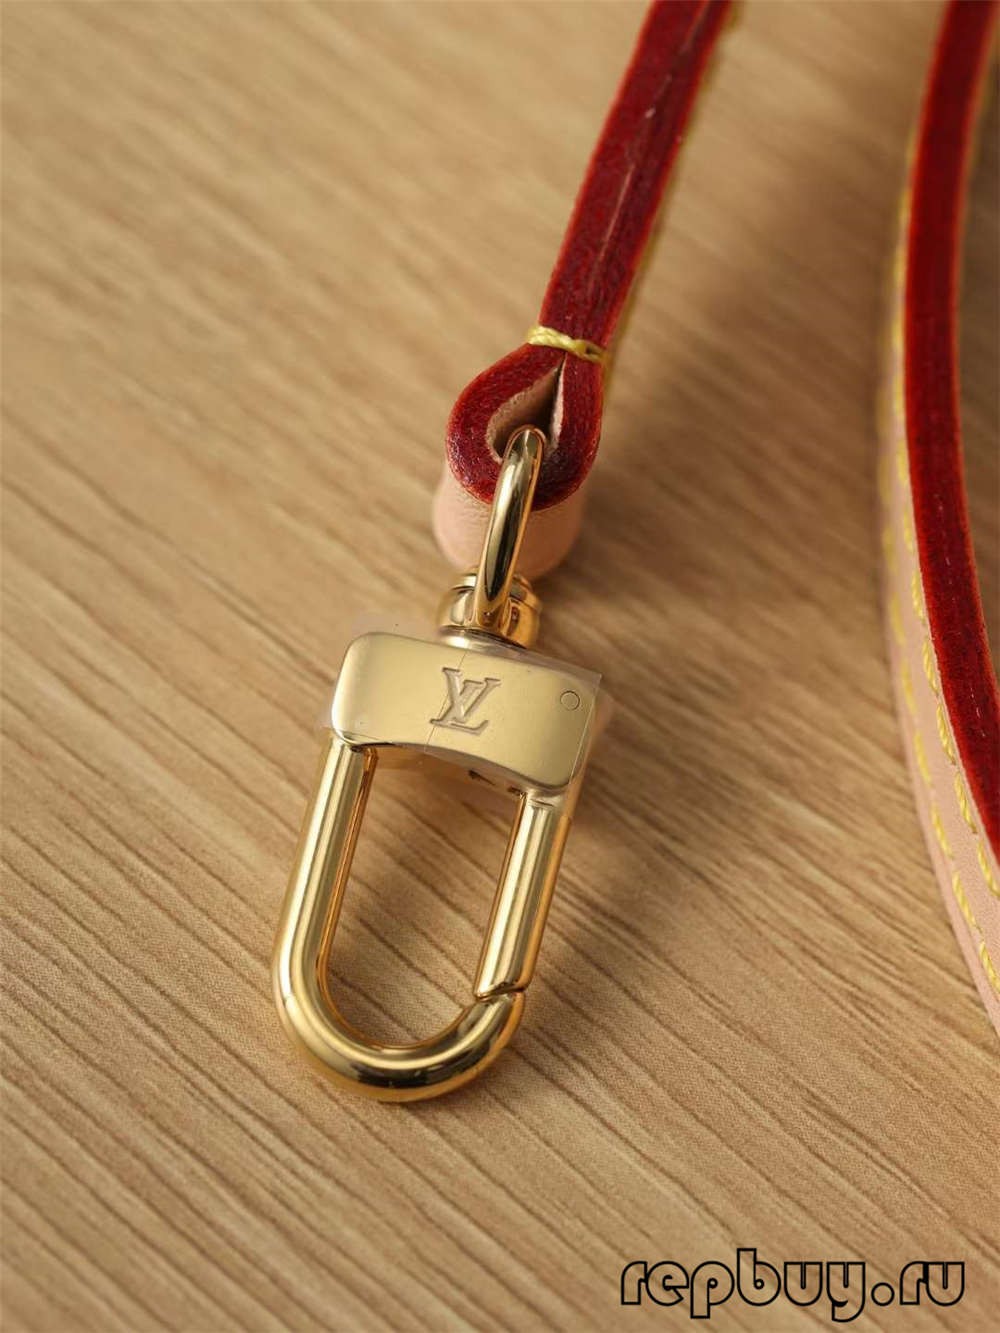 Louis Vuitton M53152 Alma BB špičková kvalita repliky tašiek (aktualizované 2022)-najlepšia kvalita falošných tašiek Louis Vuitton online obchod, replika značkovej tašky ru